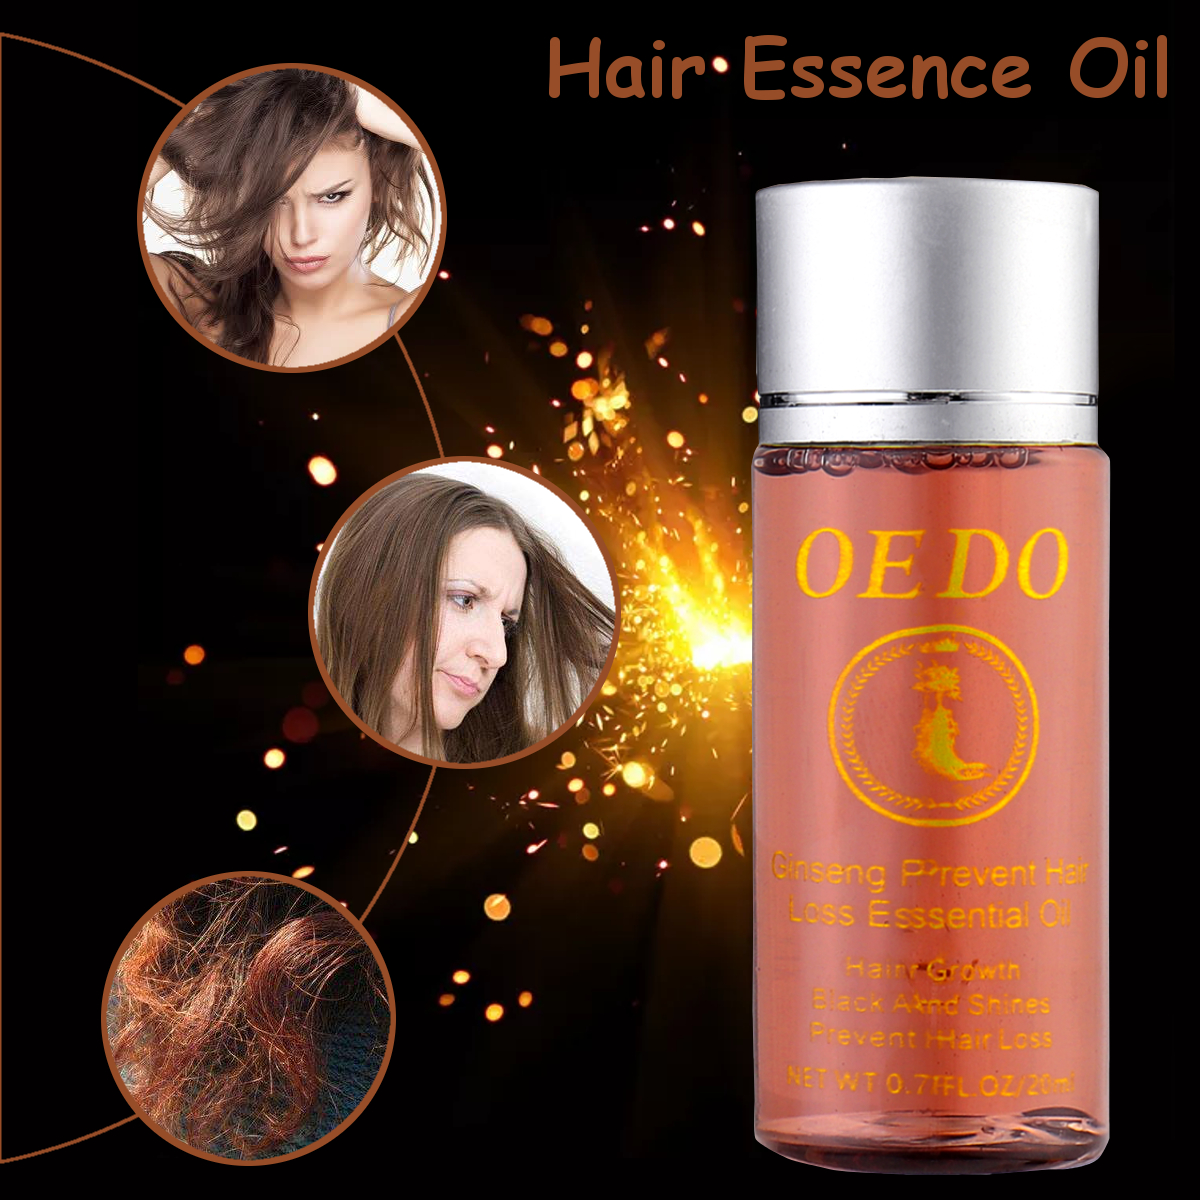 Ginseng Hair Care Regrowth Essence Oil Fast Hair Repair Growth Serum 20ml